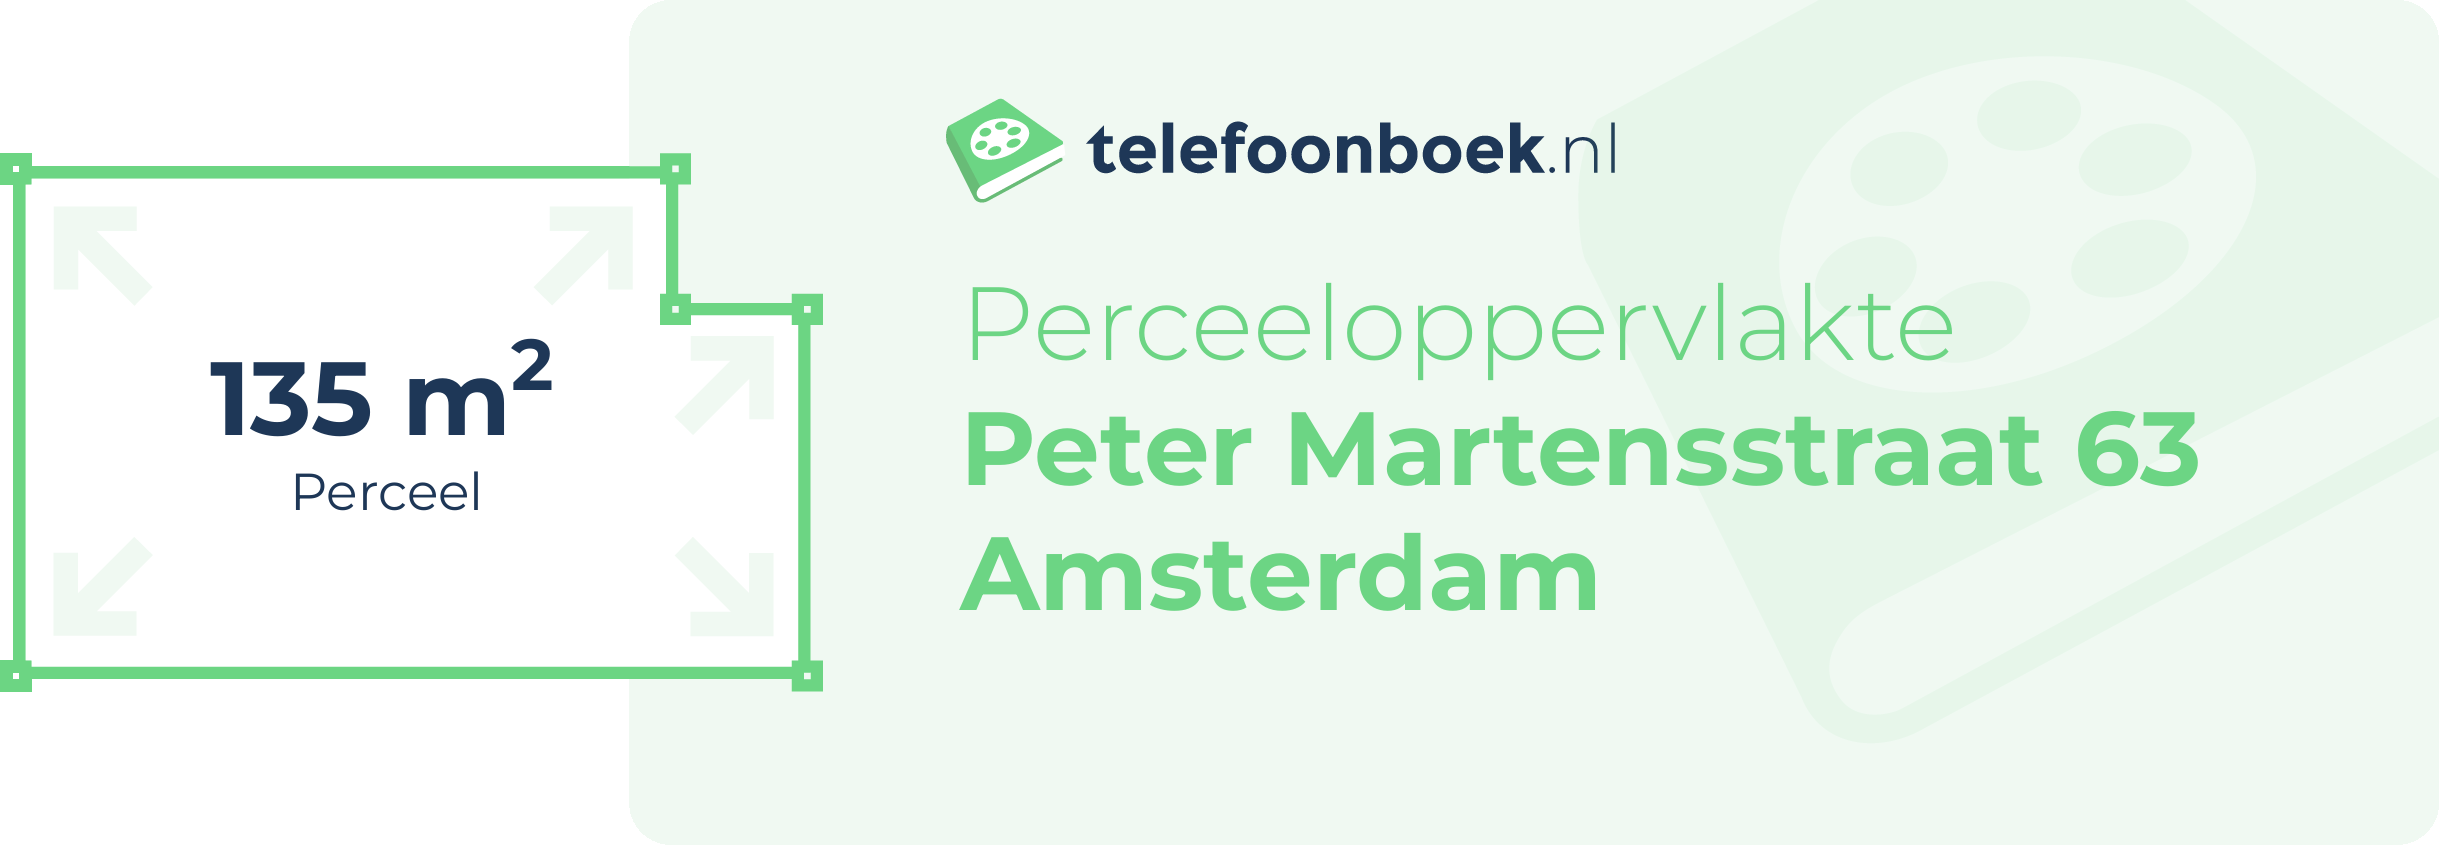 Perceeloppervlakte Peter Martensstraat 63 Amsterdam